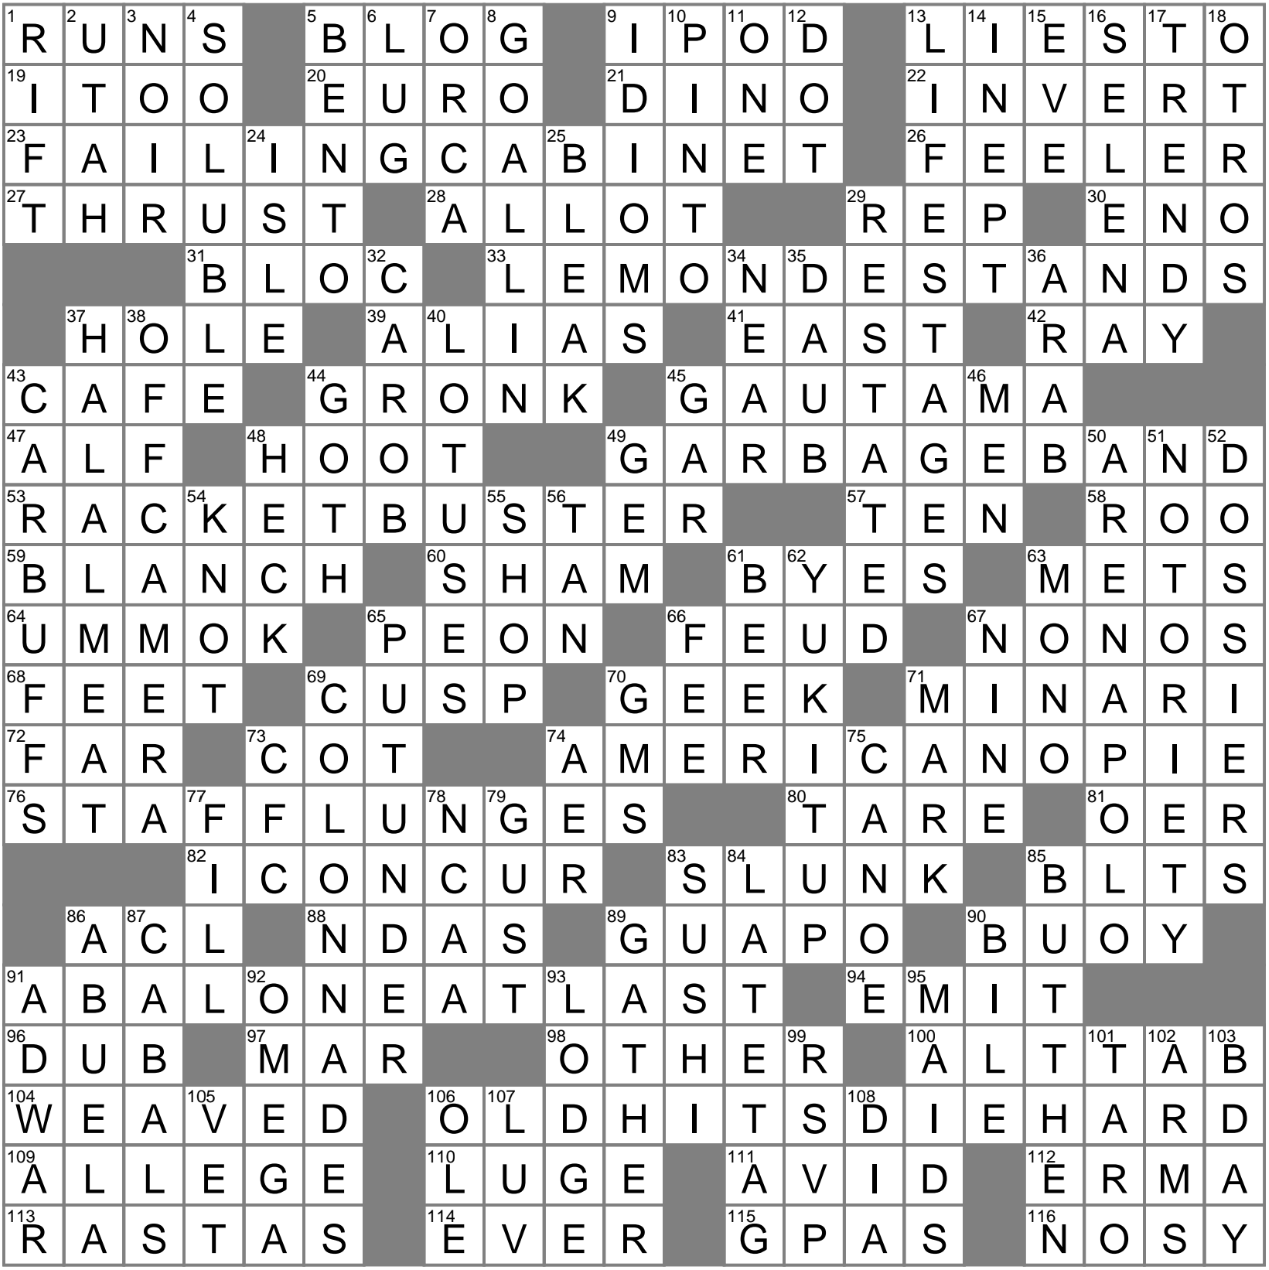 LA Times Crossword 13 Aug 23 Sunday LAXCrossword com